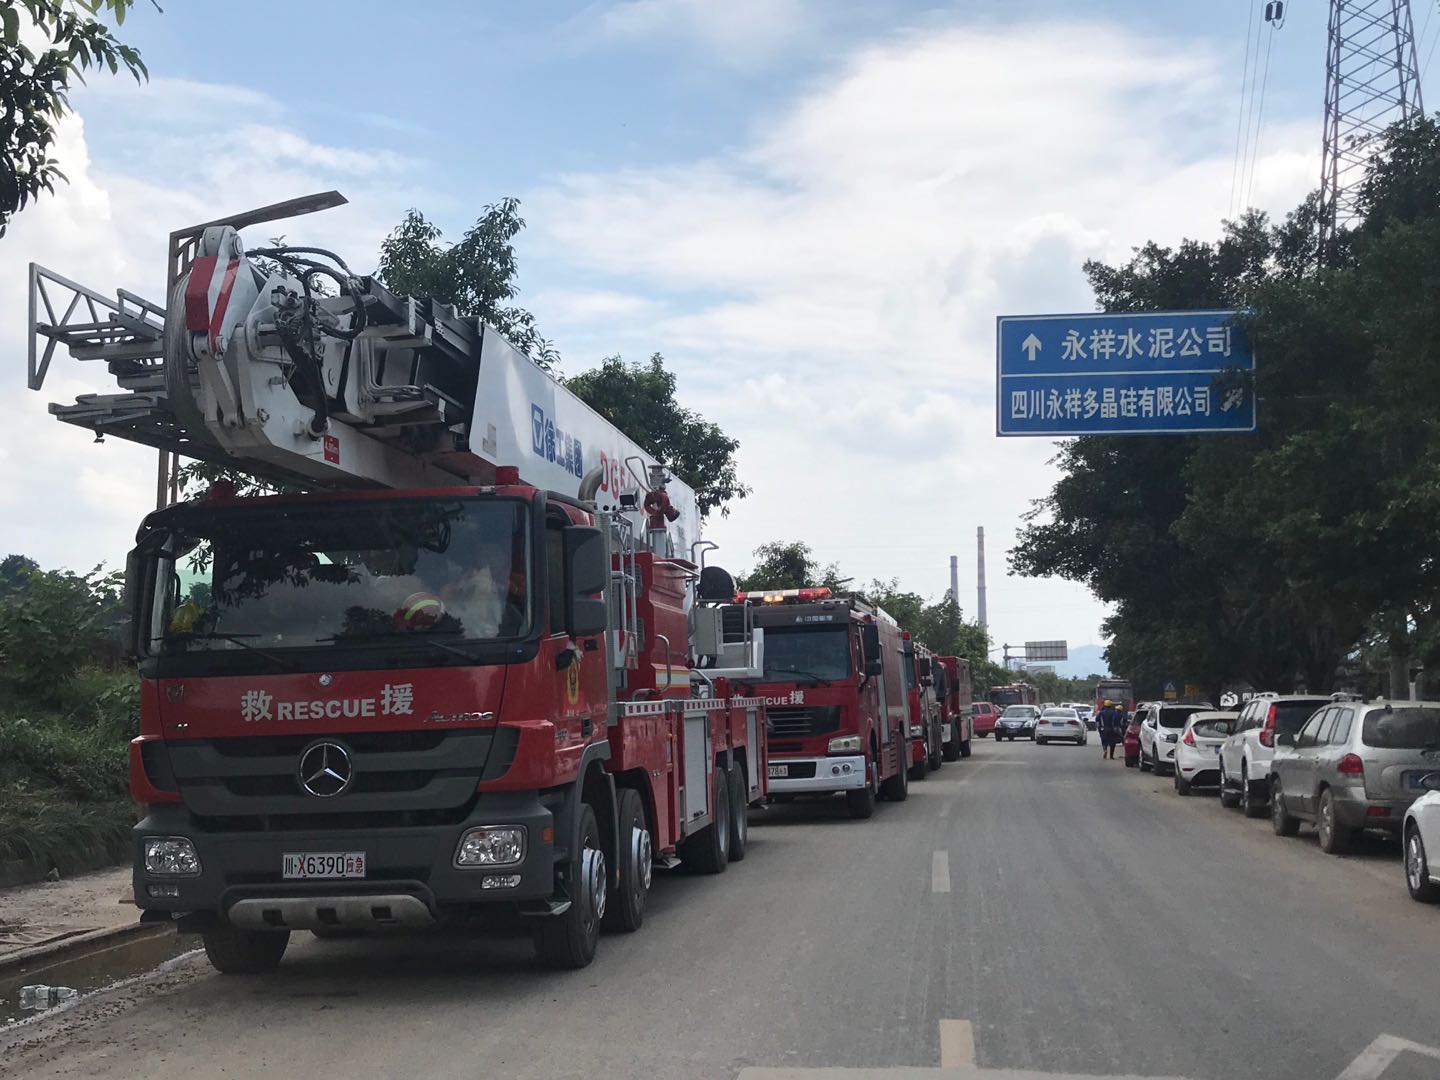 8月20日中午，仍有消防车停放在厂区门口的街面上